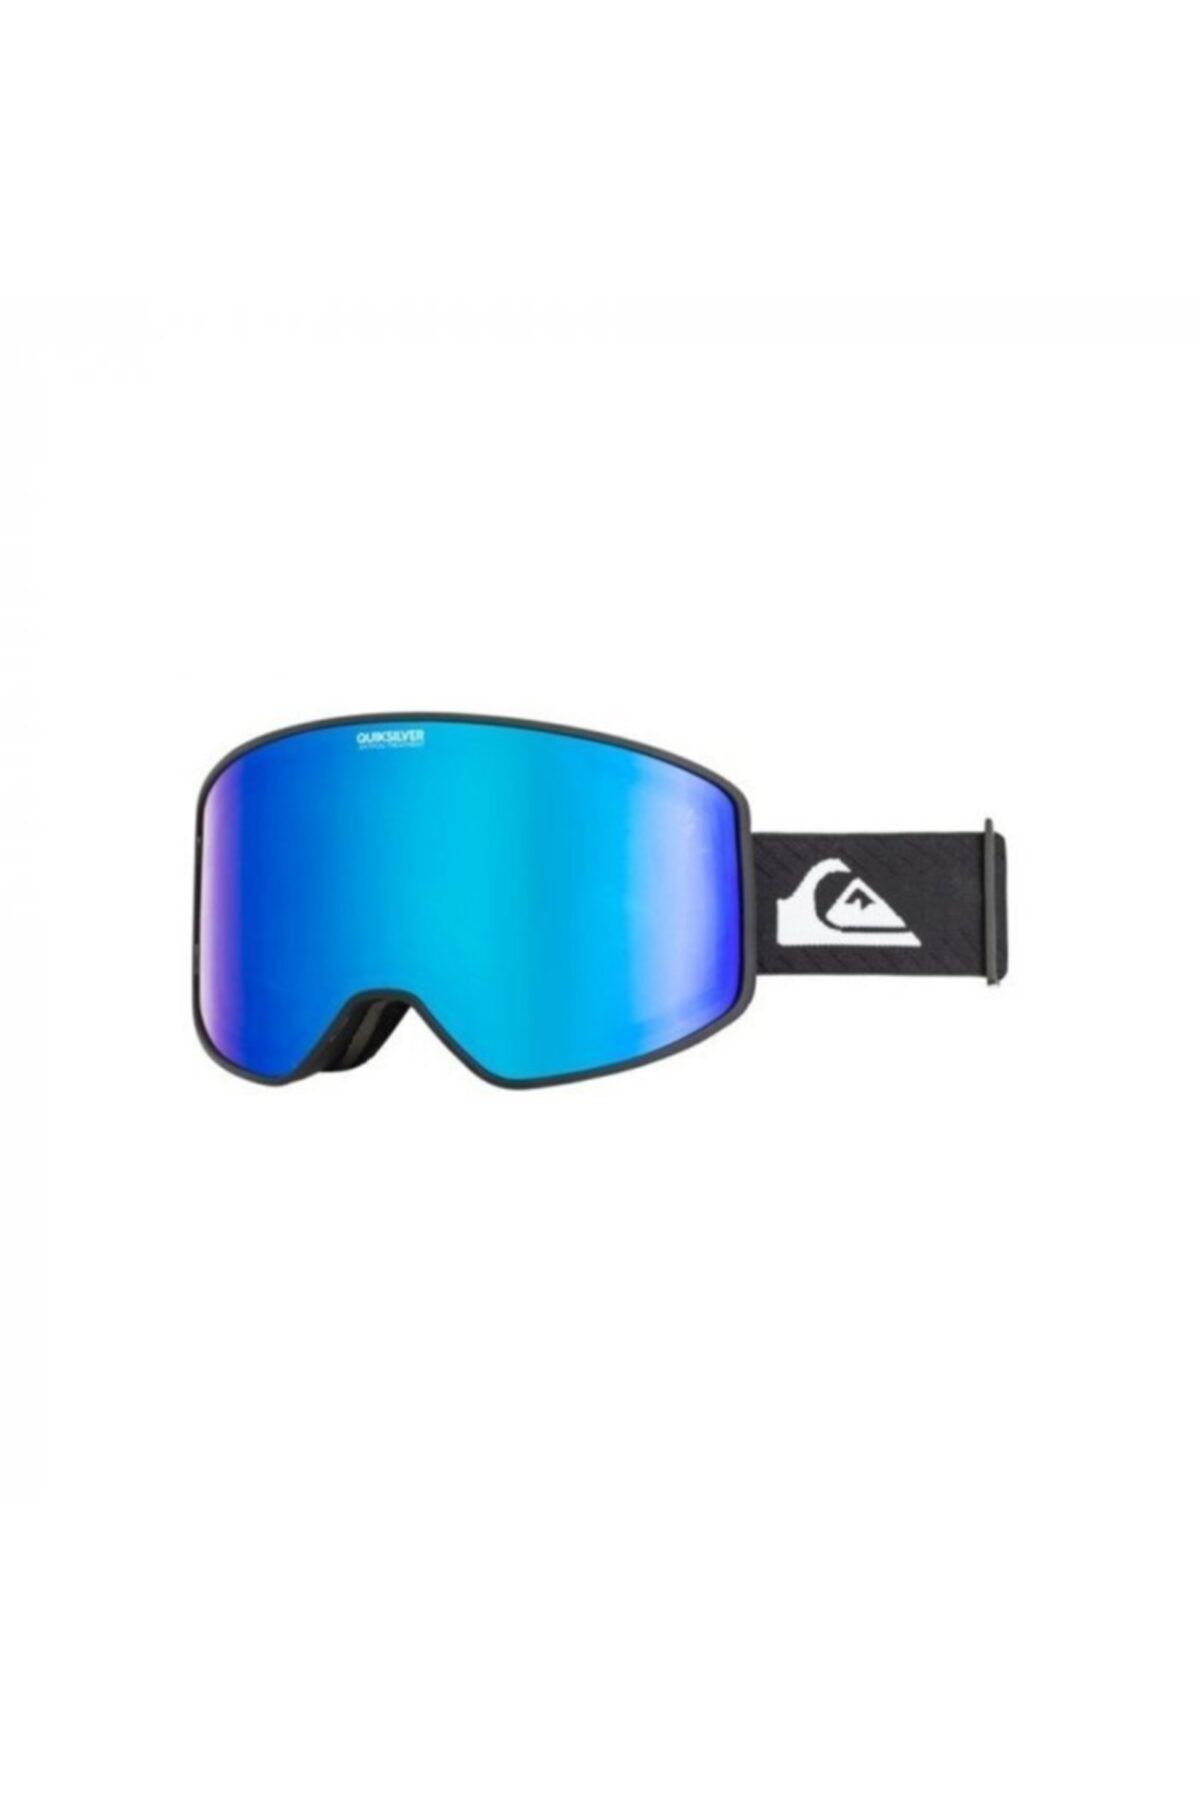 Quiksilver Storm Erkek Kayak Gözlüğü